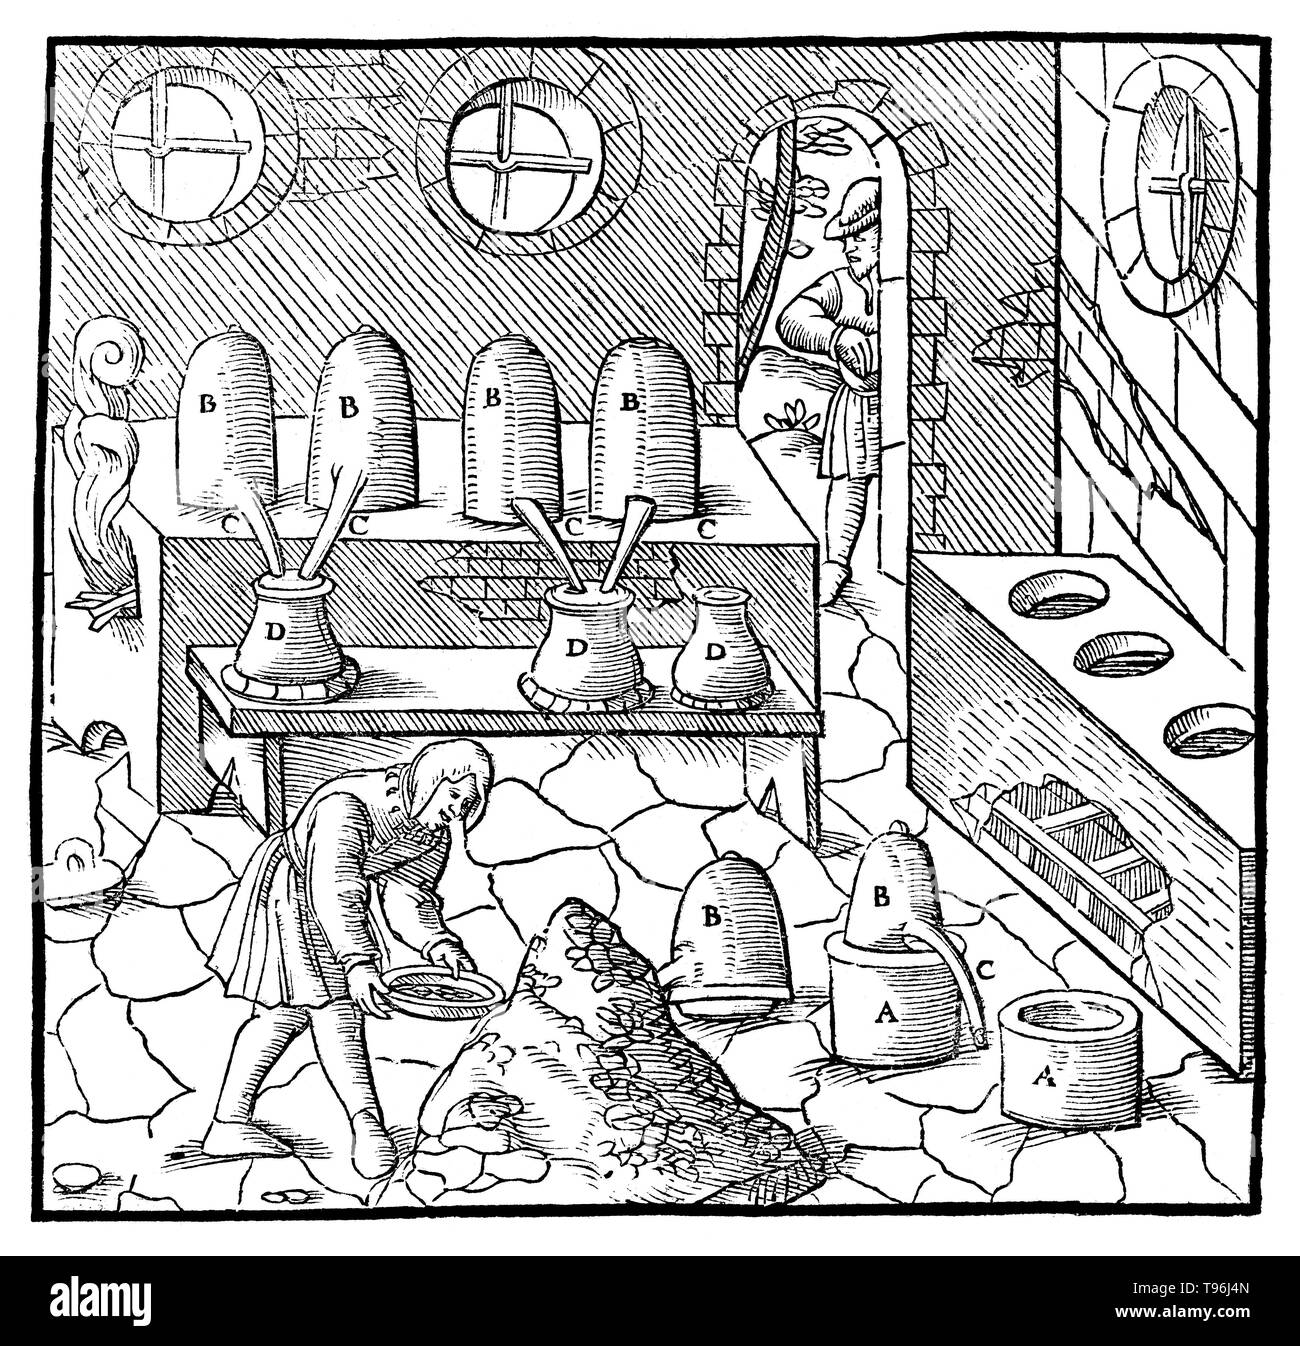 Gravure sur bois à partir De Re Metallica. La distillation de quicksilver (raffinage). Georgius Agricola (Mars 24, 1494 - Novembre 21, 1555) était un scientifique et chercheur allemand, connu comme ''le père de la minéralogie''. En 1556 il publie son ouvrage De Re Metallica, un traité sur l'exploitation minière et la métallurgie extractive, de gravures sur bois illustrant les processus pour extraire des minerais depuis le sol et le métal du minerai, et les nombreuses utilisations des moulins à eau dans l'exploitation minière. Banque D'Images